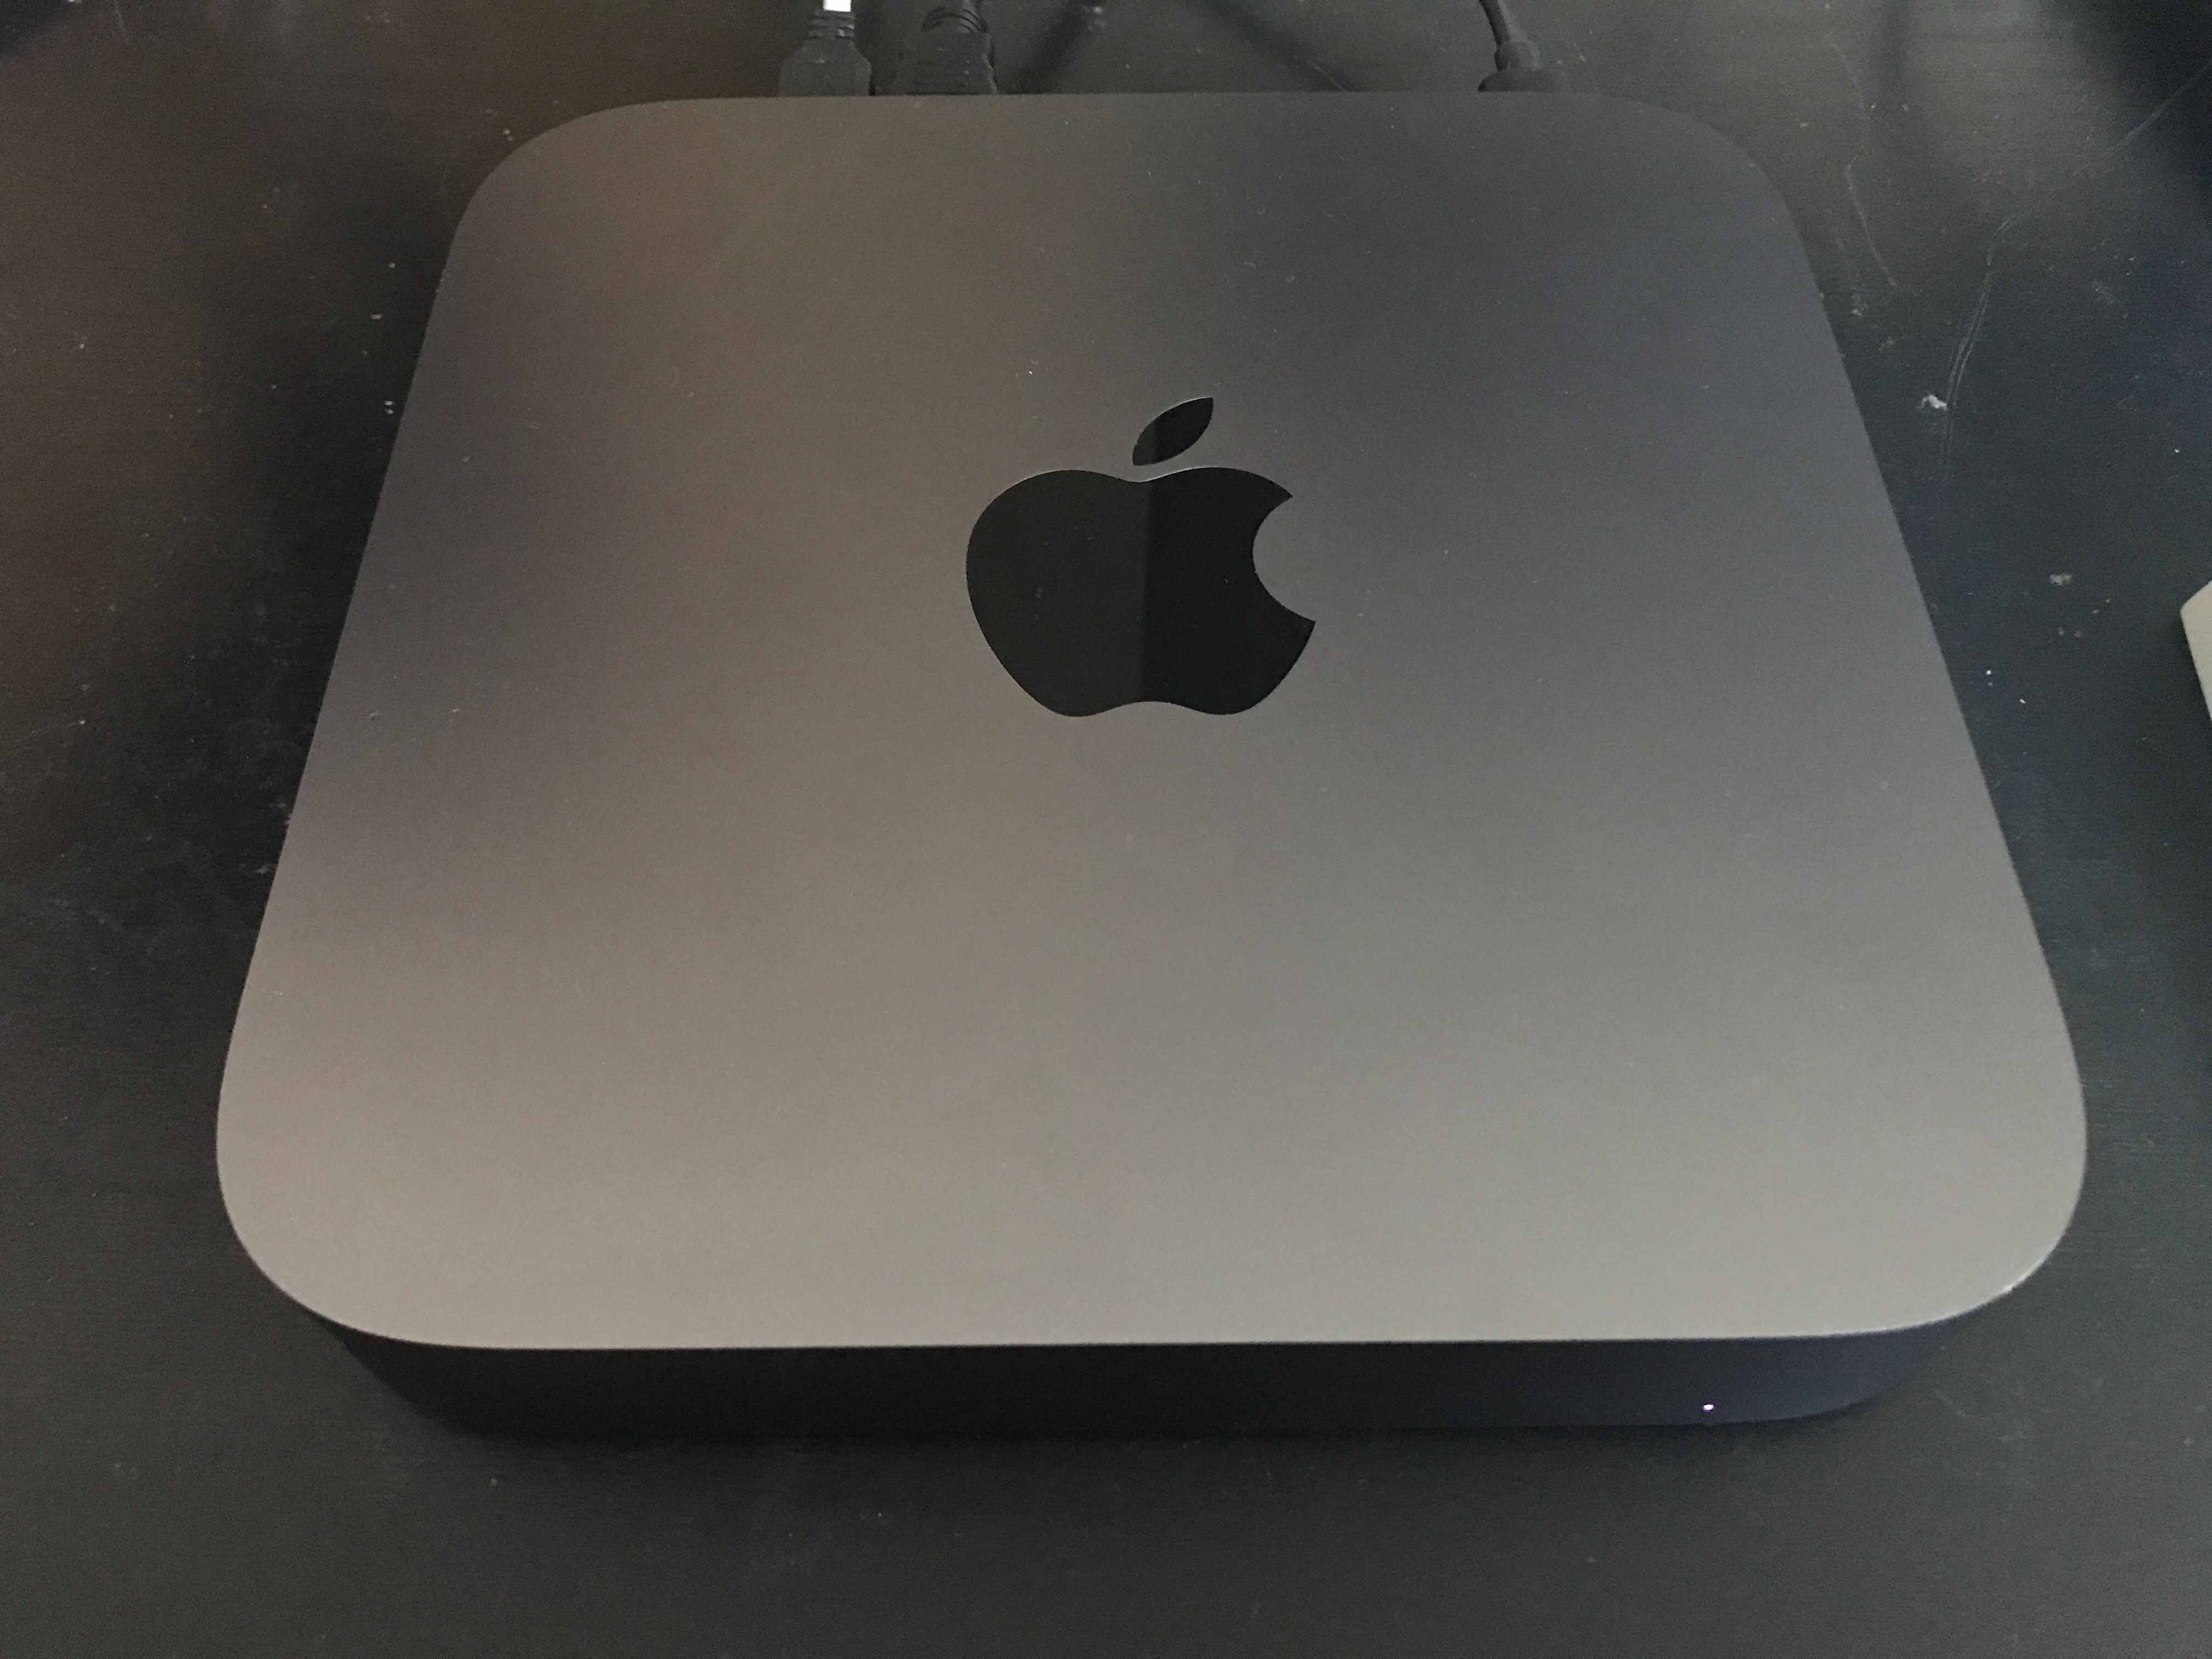 FALSK bryder daggry Brandy Mac mini 2018 no signal on HDMI - Apple Community